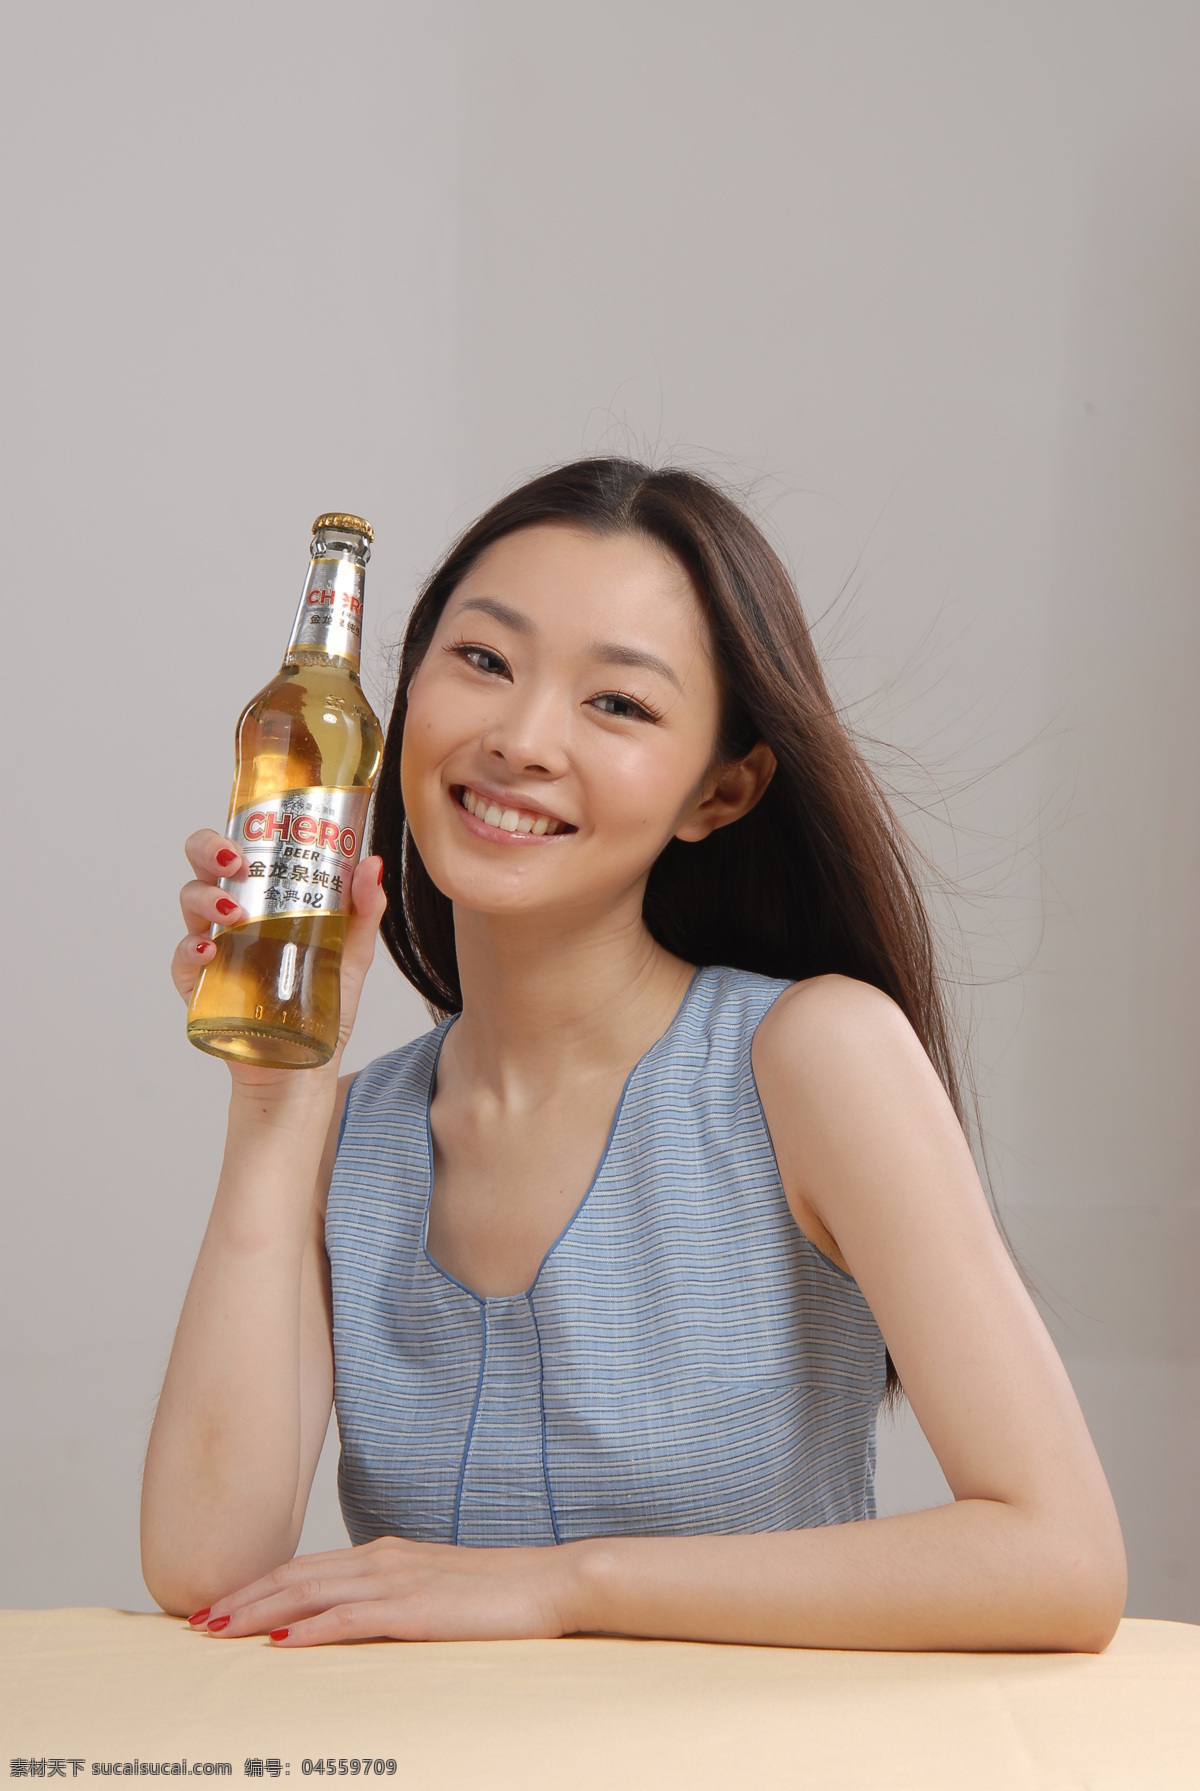 啤酒 代言 金龙泉 女性女人 人物图库 啤酒代言 矢量图 日常生活